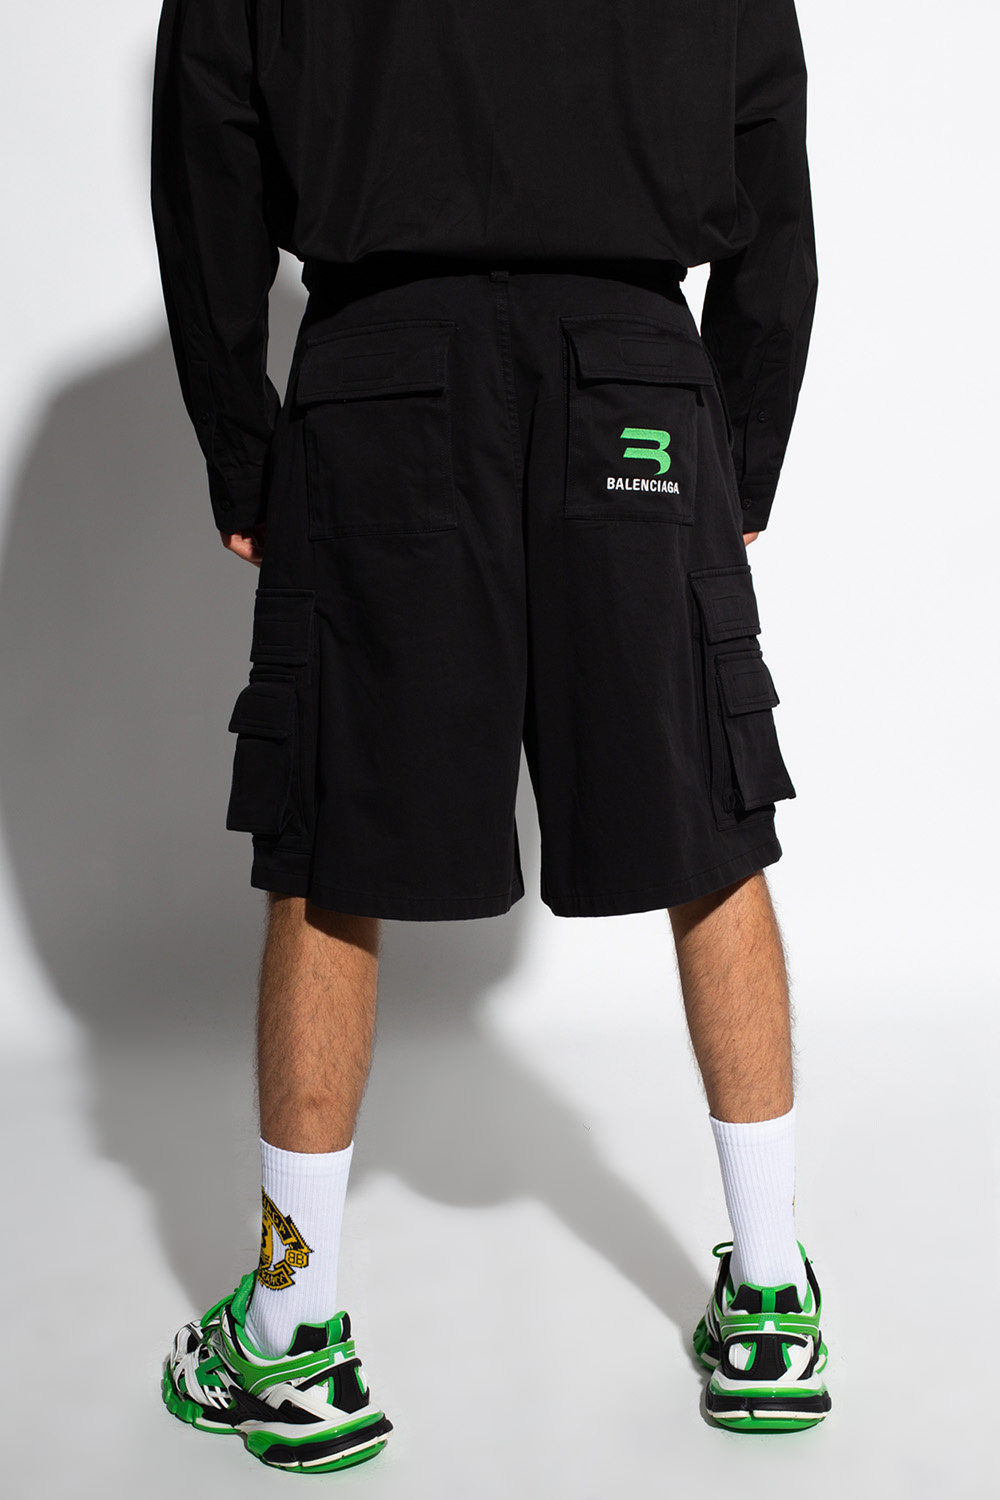 Balenciaga shorts Frugi with logo